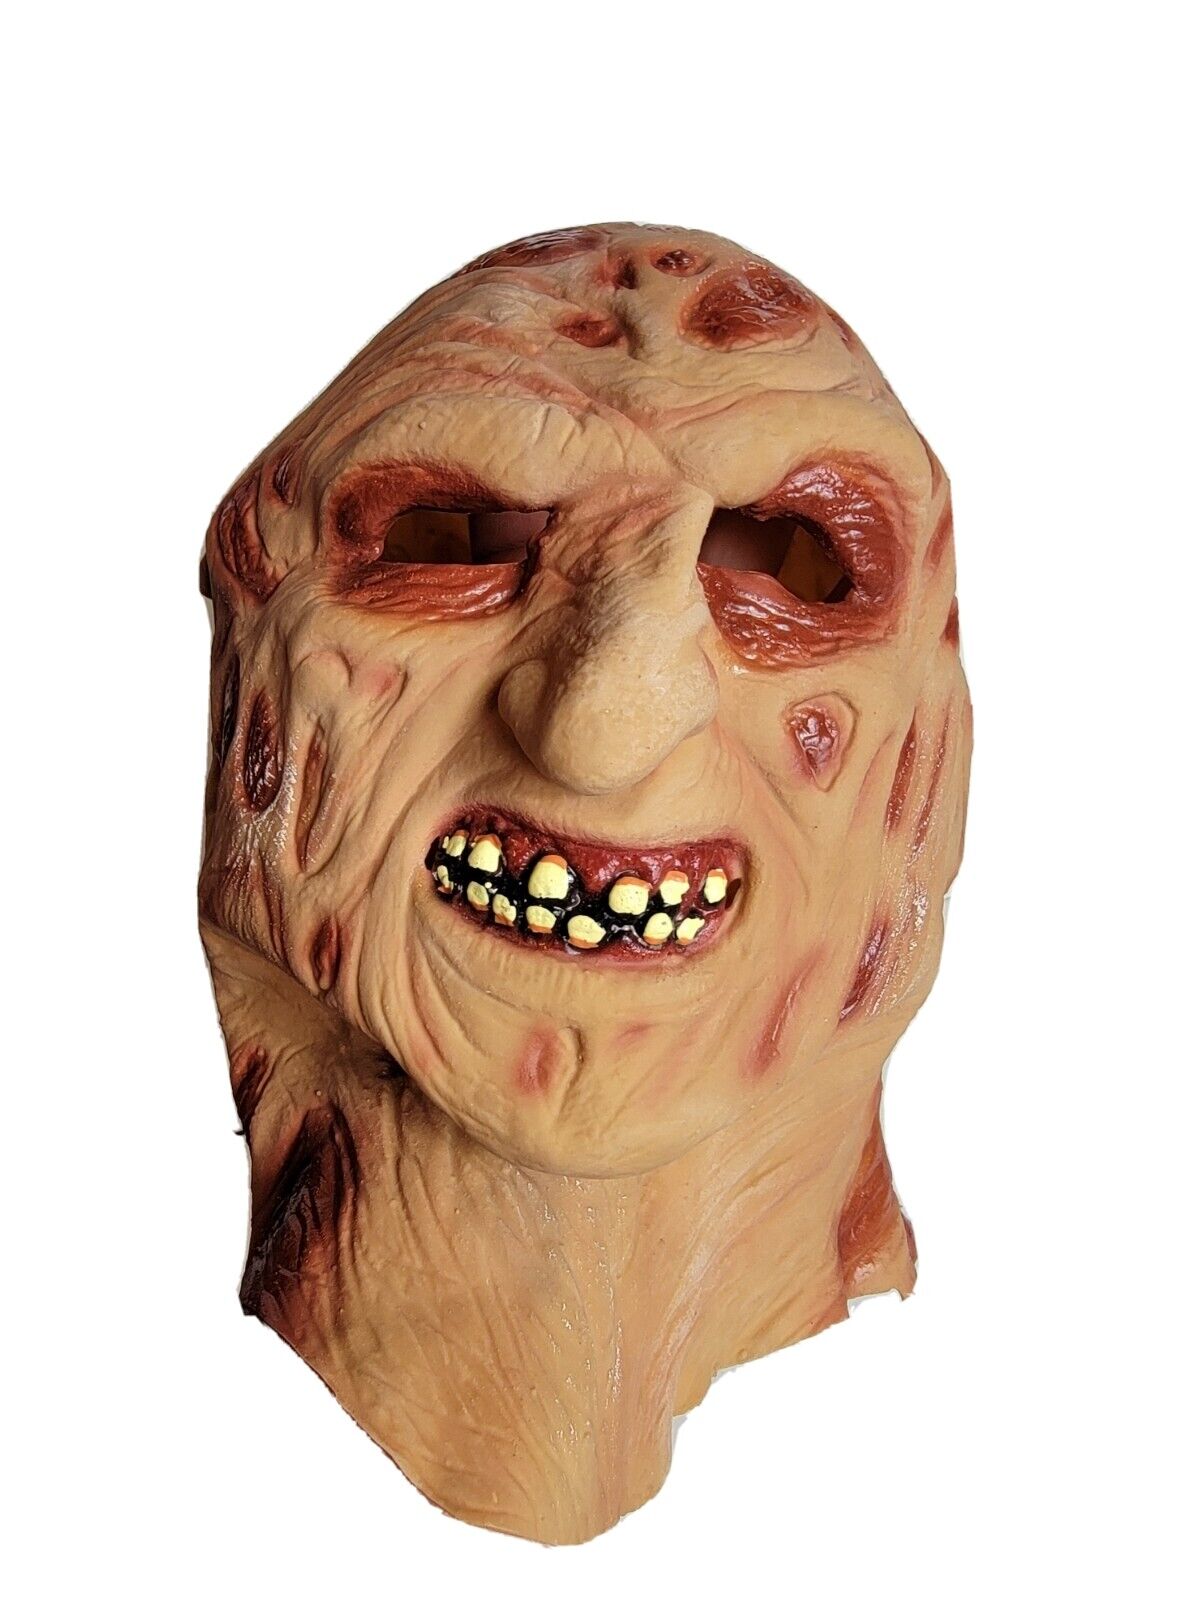 Vintage Freddy Krueger Nightmare on Elm Street Halloween Mask Full Head Latex